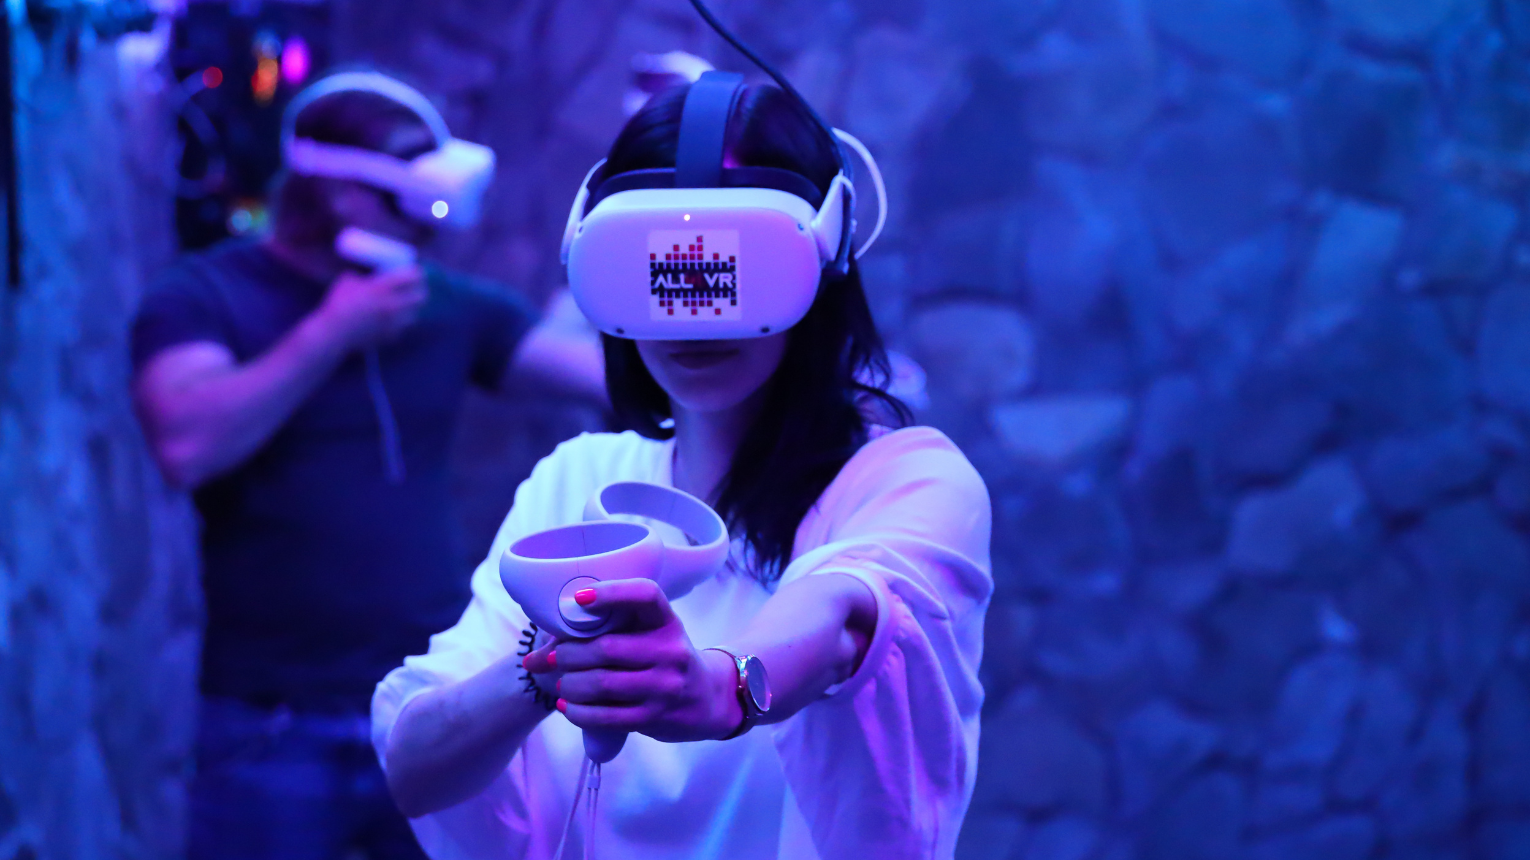 virtuális valóság páros randi vr élmény